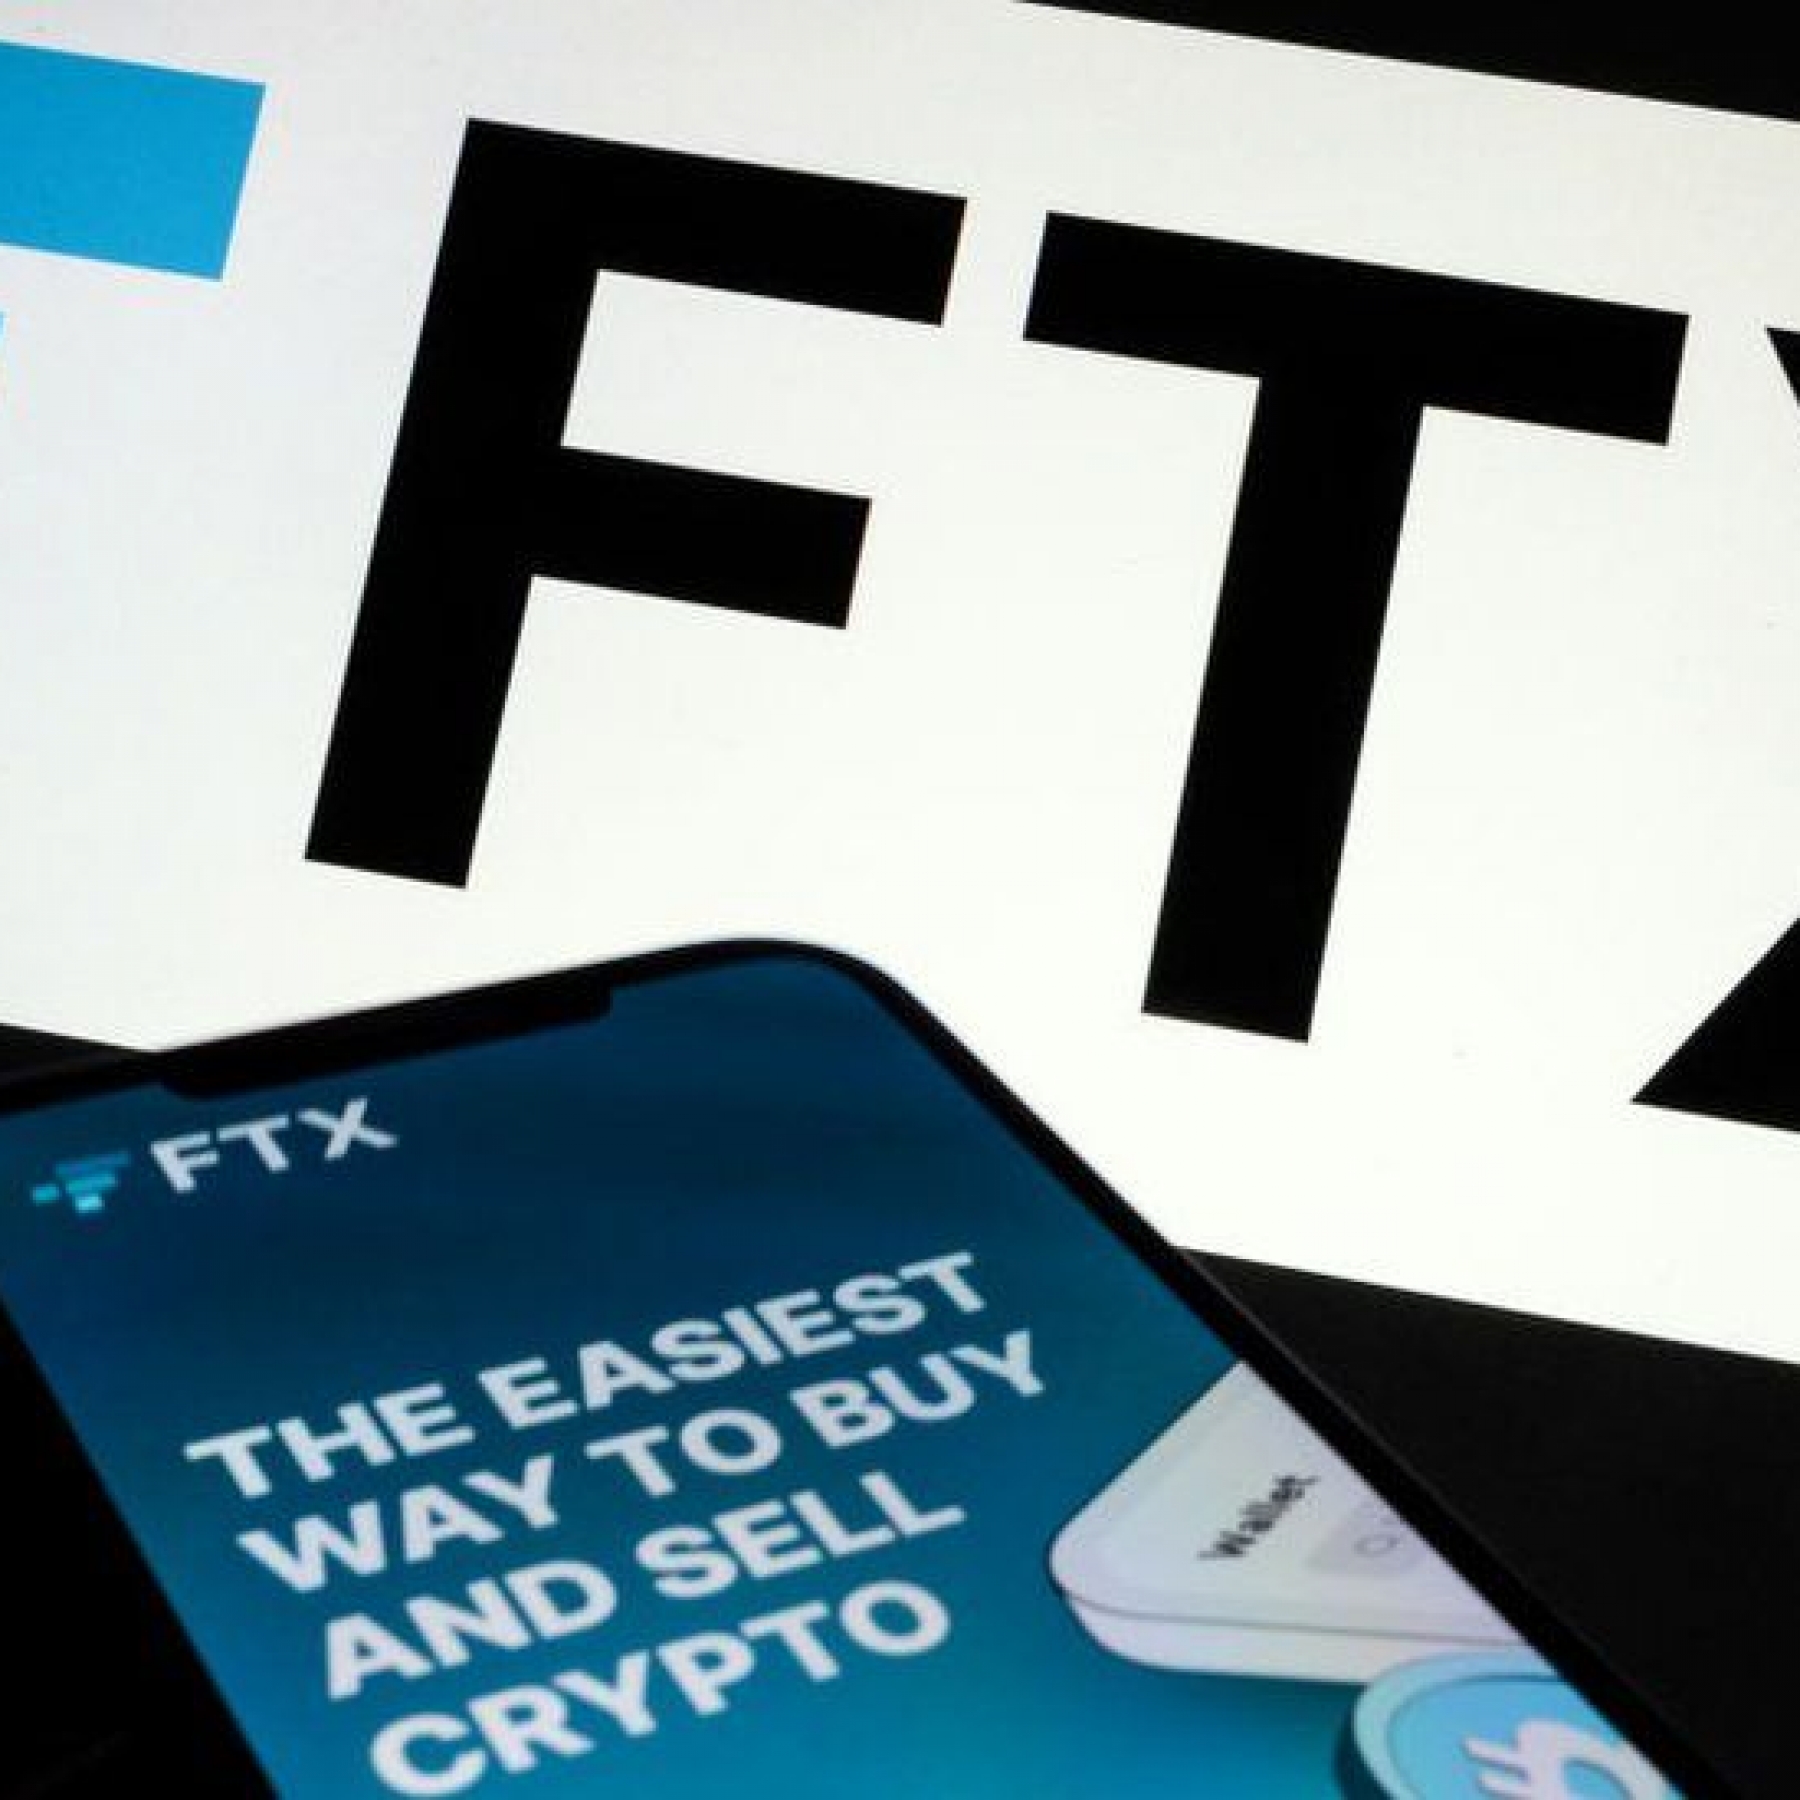 FTX crypto exchange